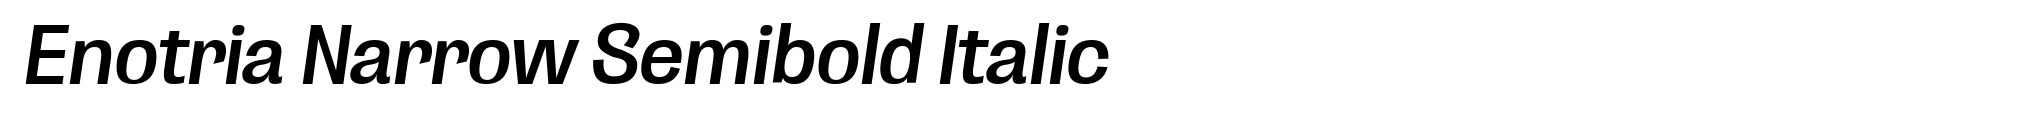 Enotria Narrow Semibold Italic image